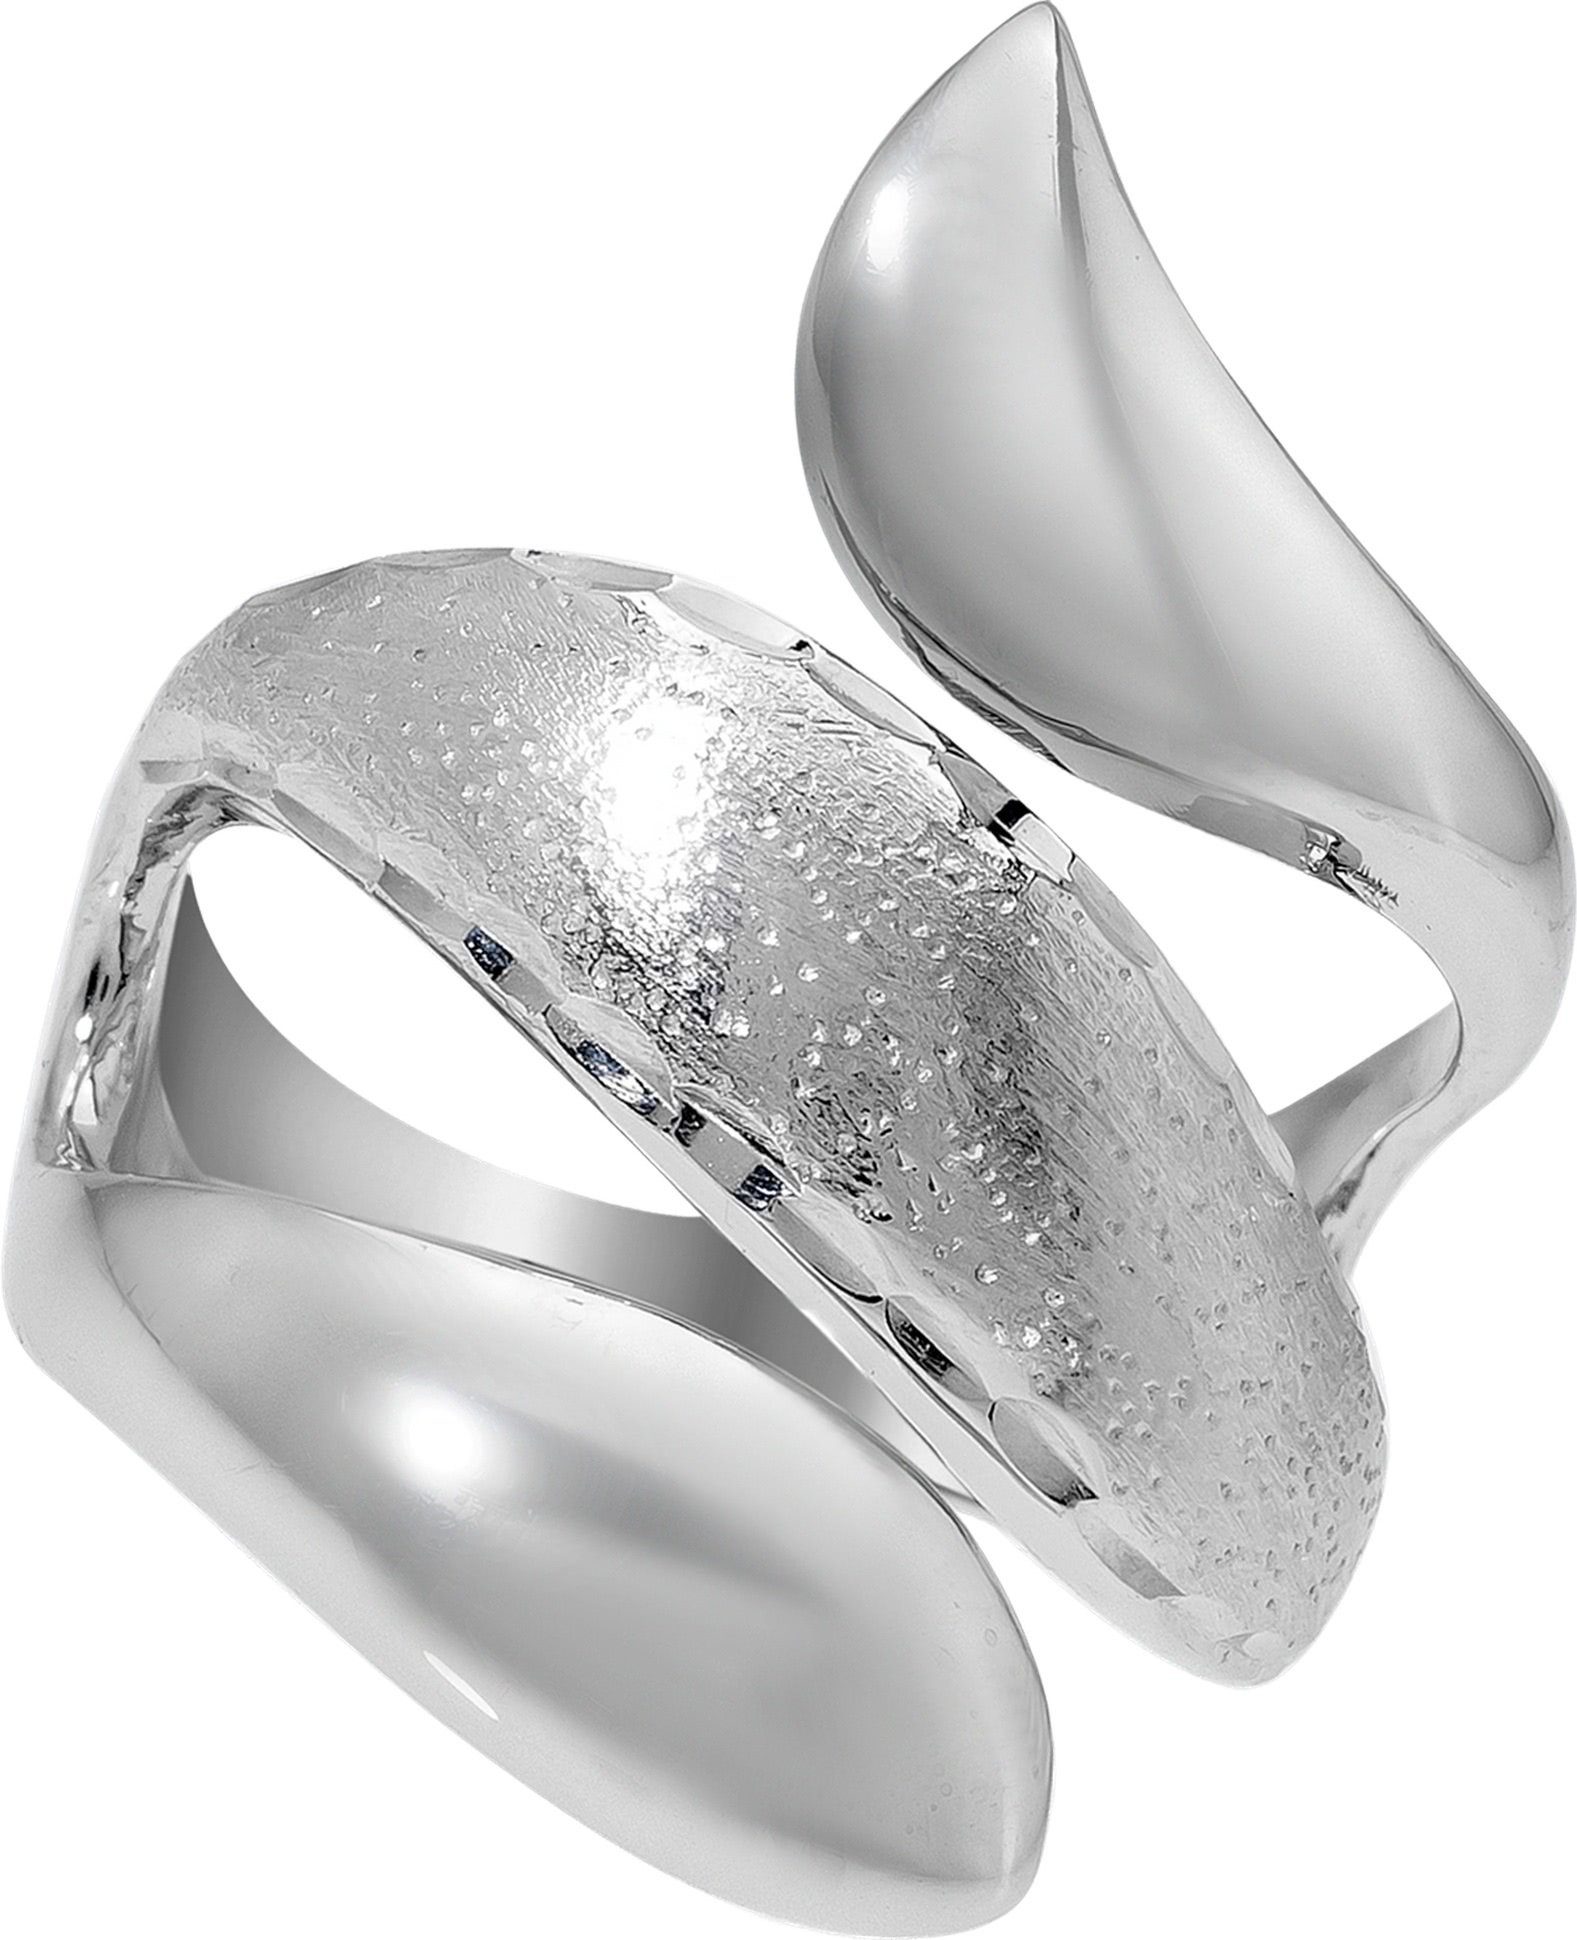 Balia Silberring Balia Ring für Damen mit diamantierter (Fingerring), Fingerring Größe 54 (17,2), 925 Sterling Silber (Schlange) Silber 925